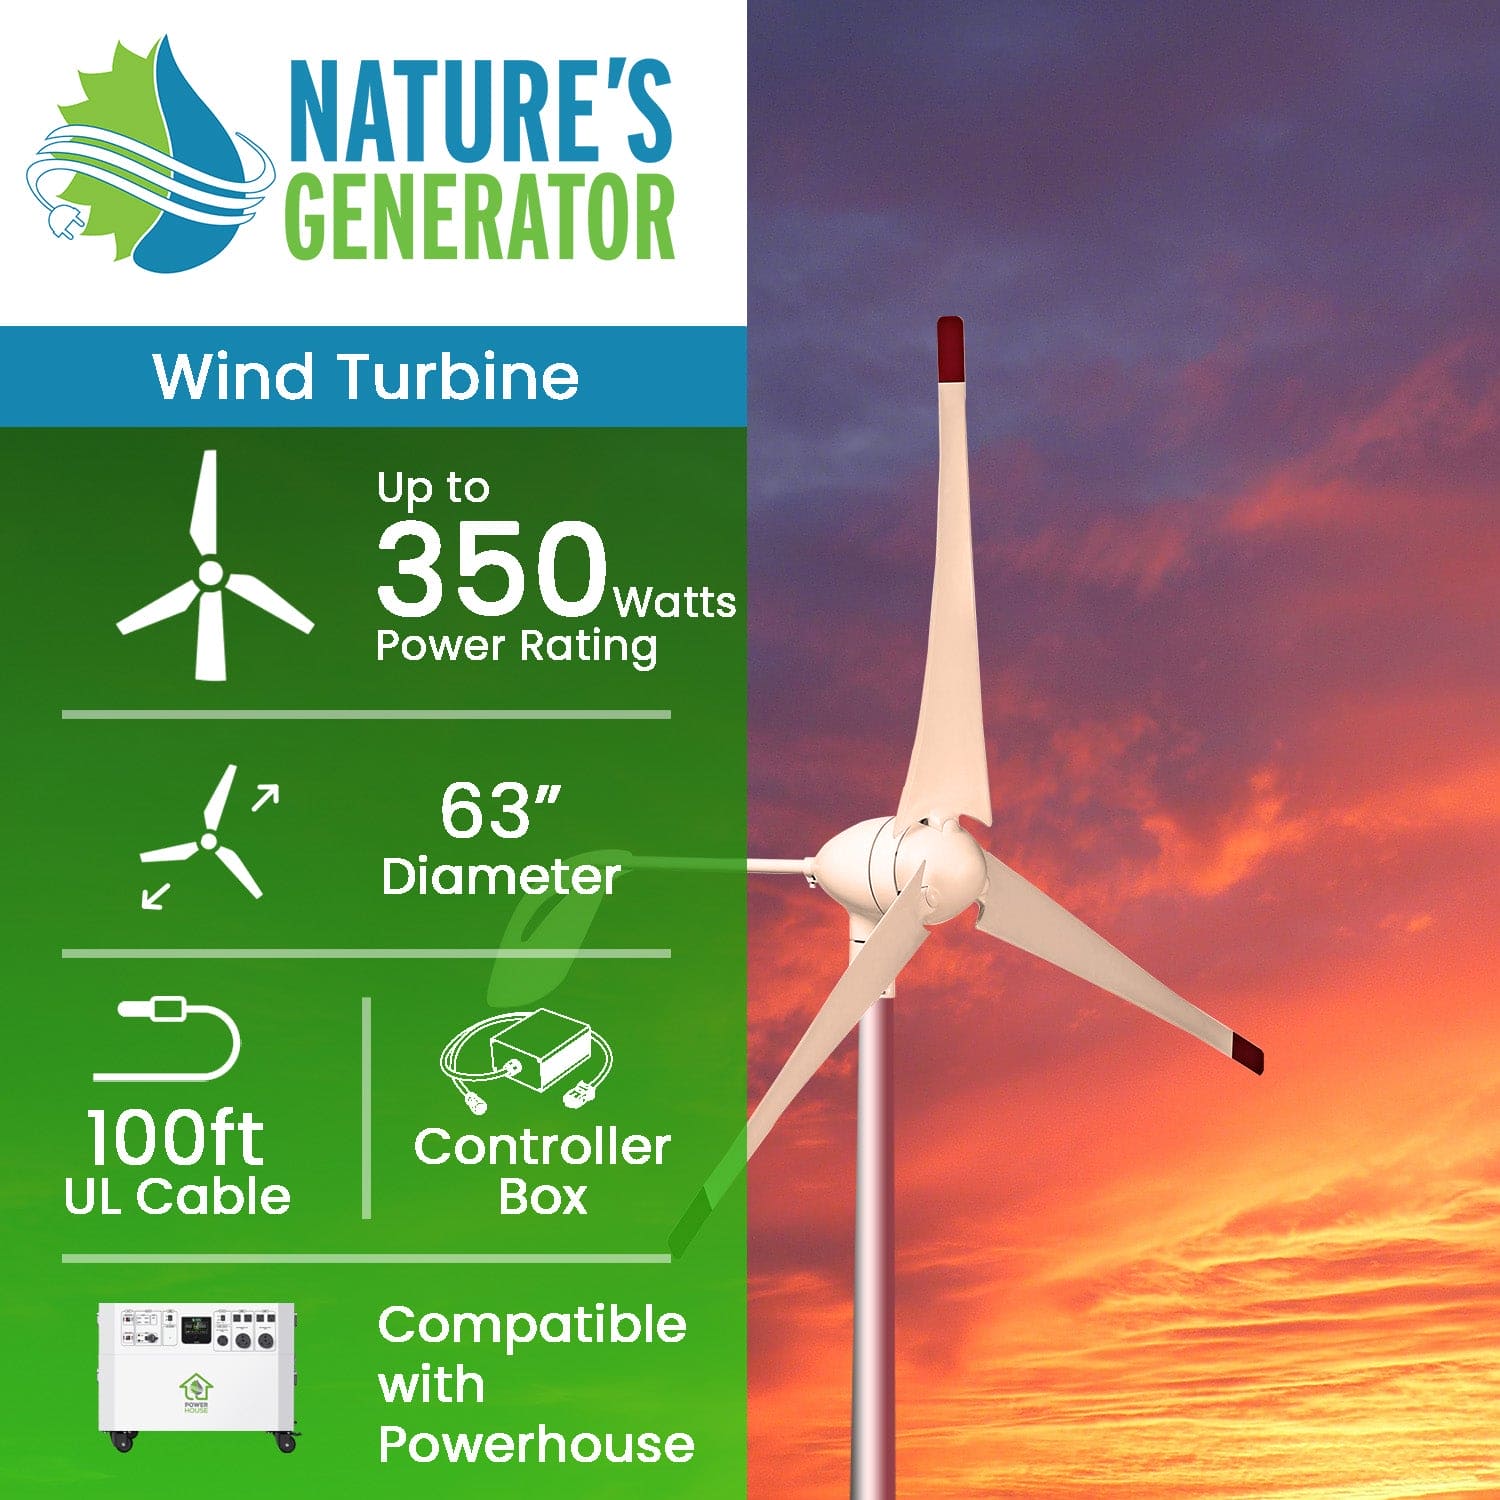 Nature's Generator Powerhouse Wind Turbine - Nature's Generator